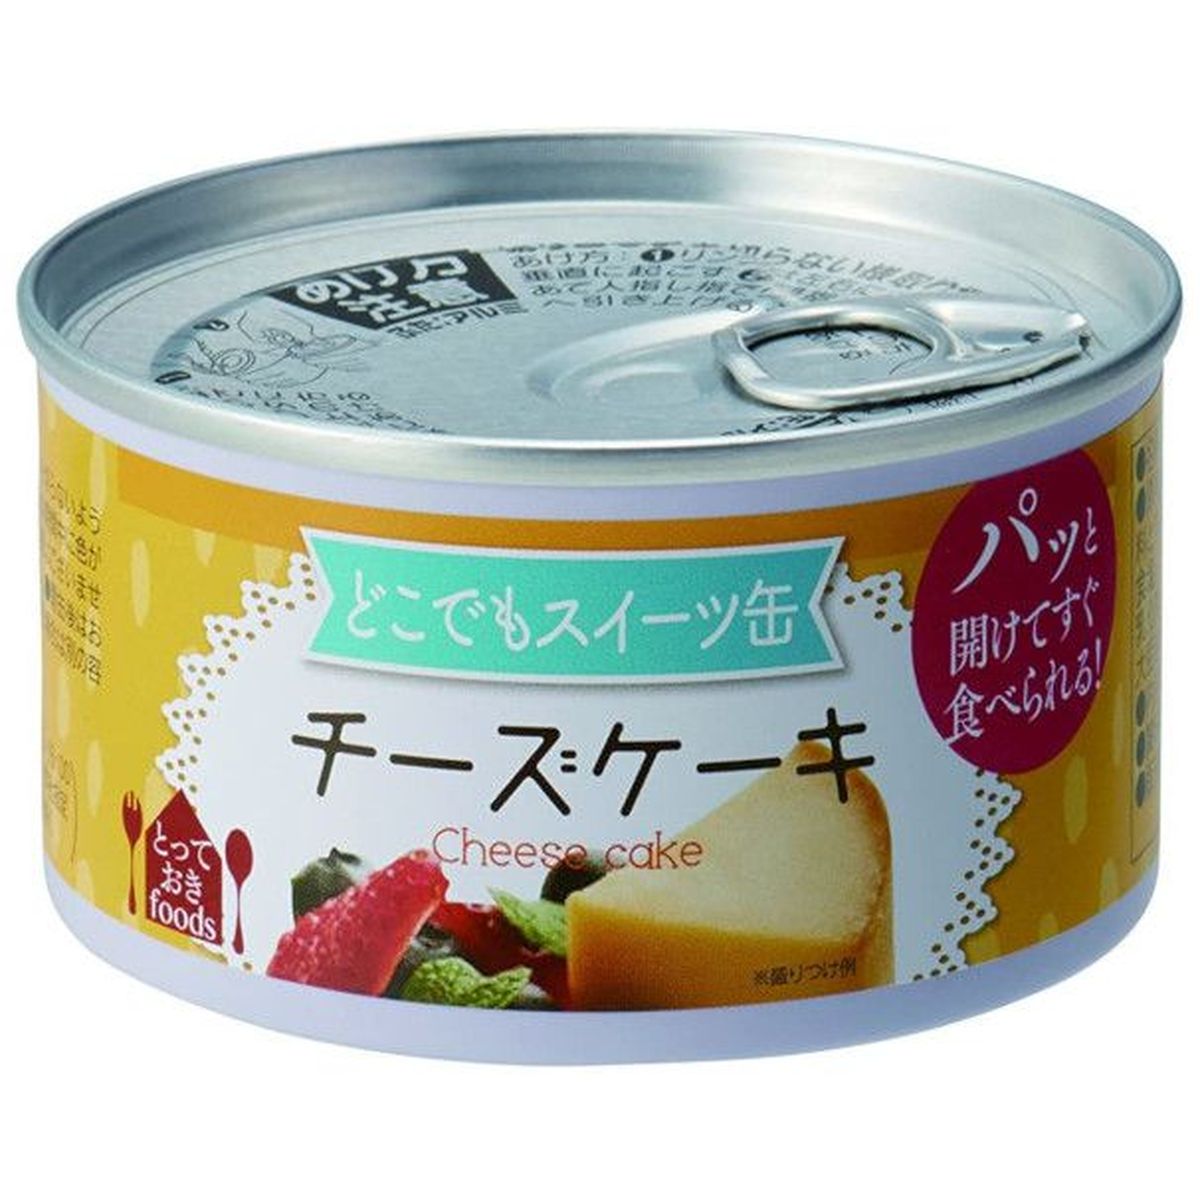 【24個入リ】トーヨーフーズ ドコデモスイーツ缶 チーズケーキ 150g